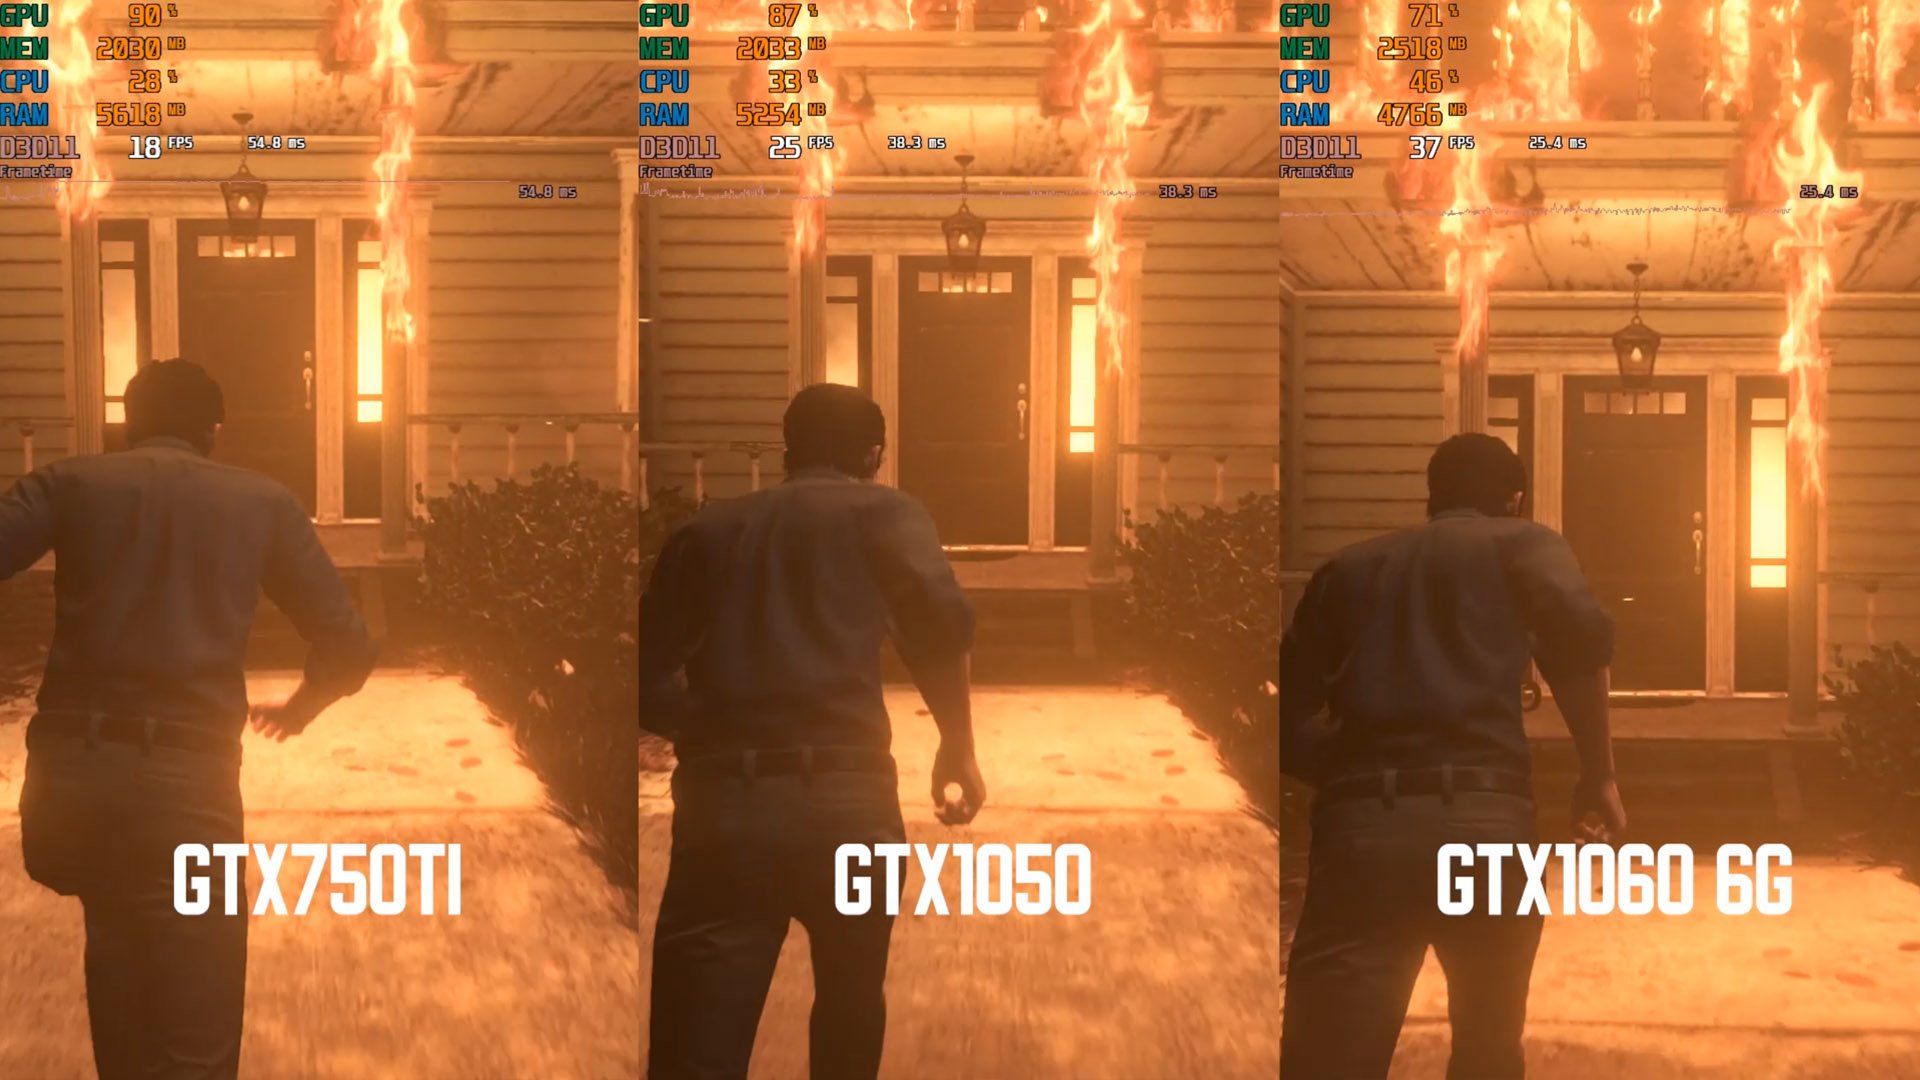 GTX750Ti vs GTX1050 vs GTX1060 6g test. Тест производительности, сравнение видеокарт.